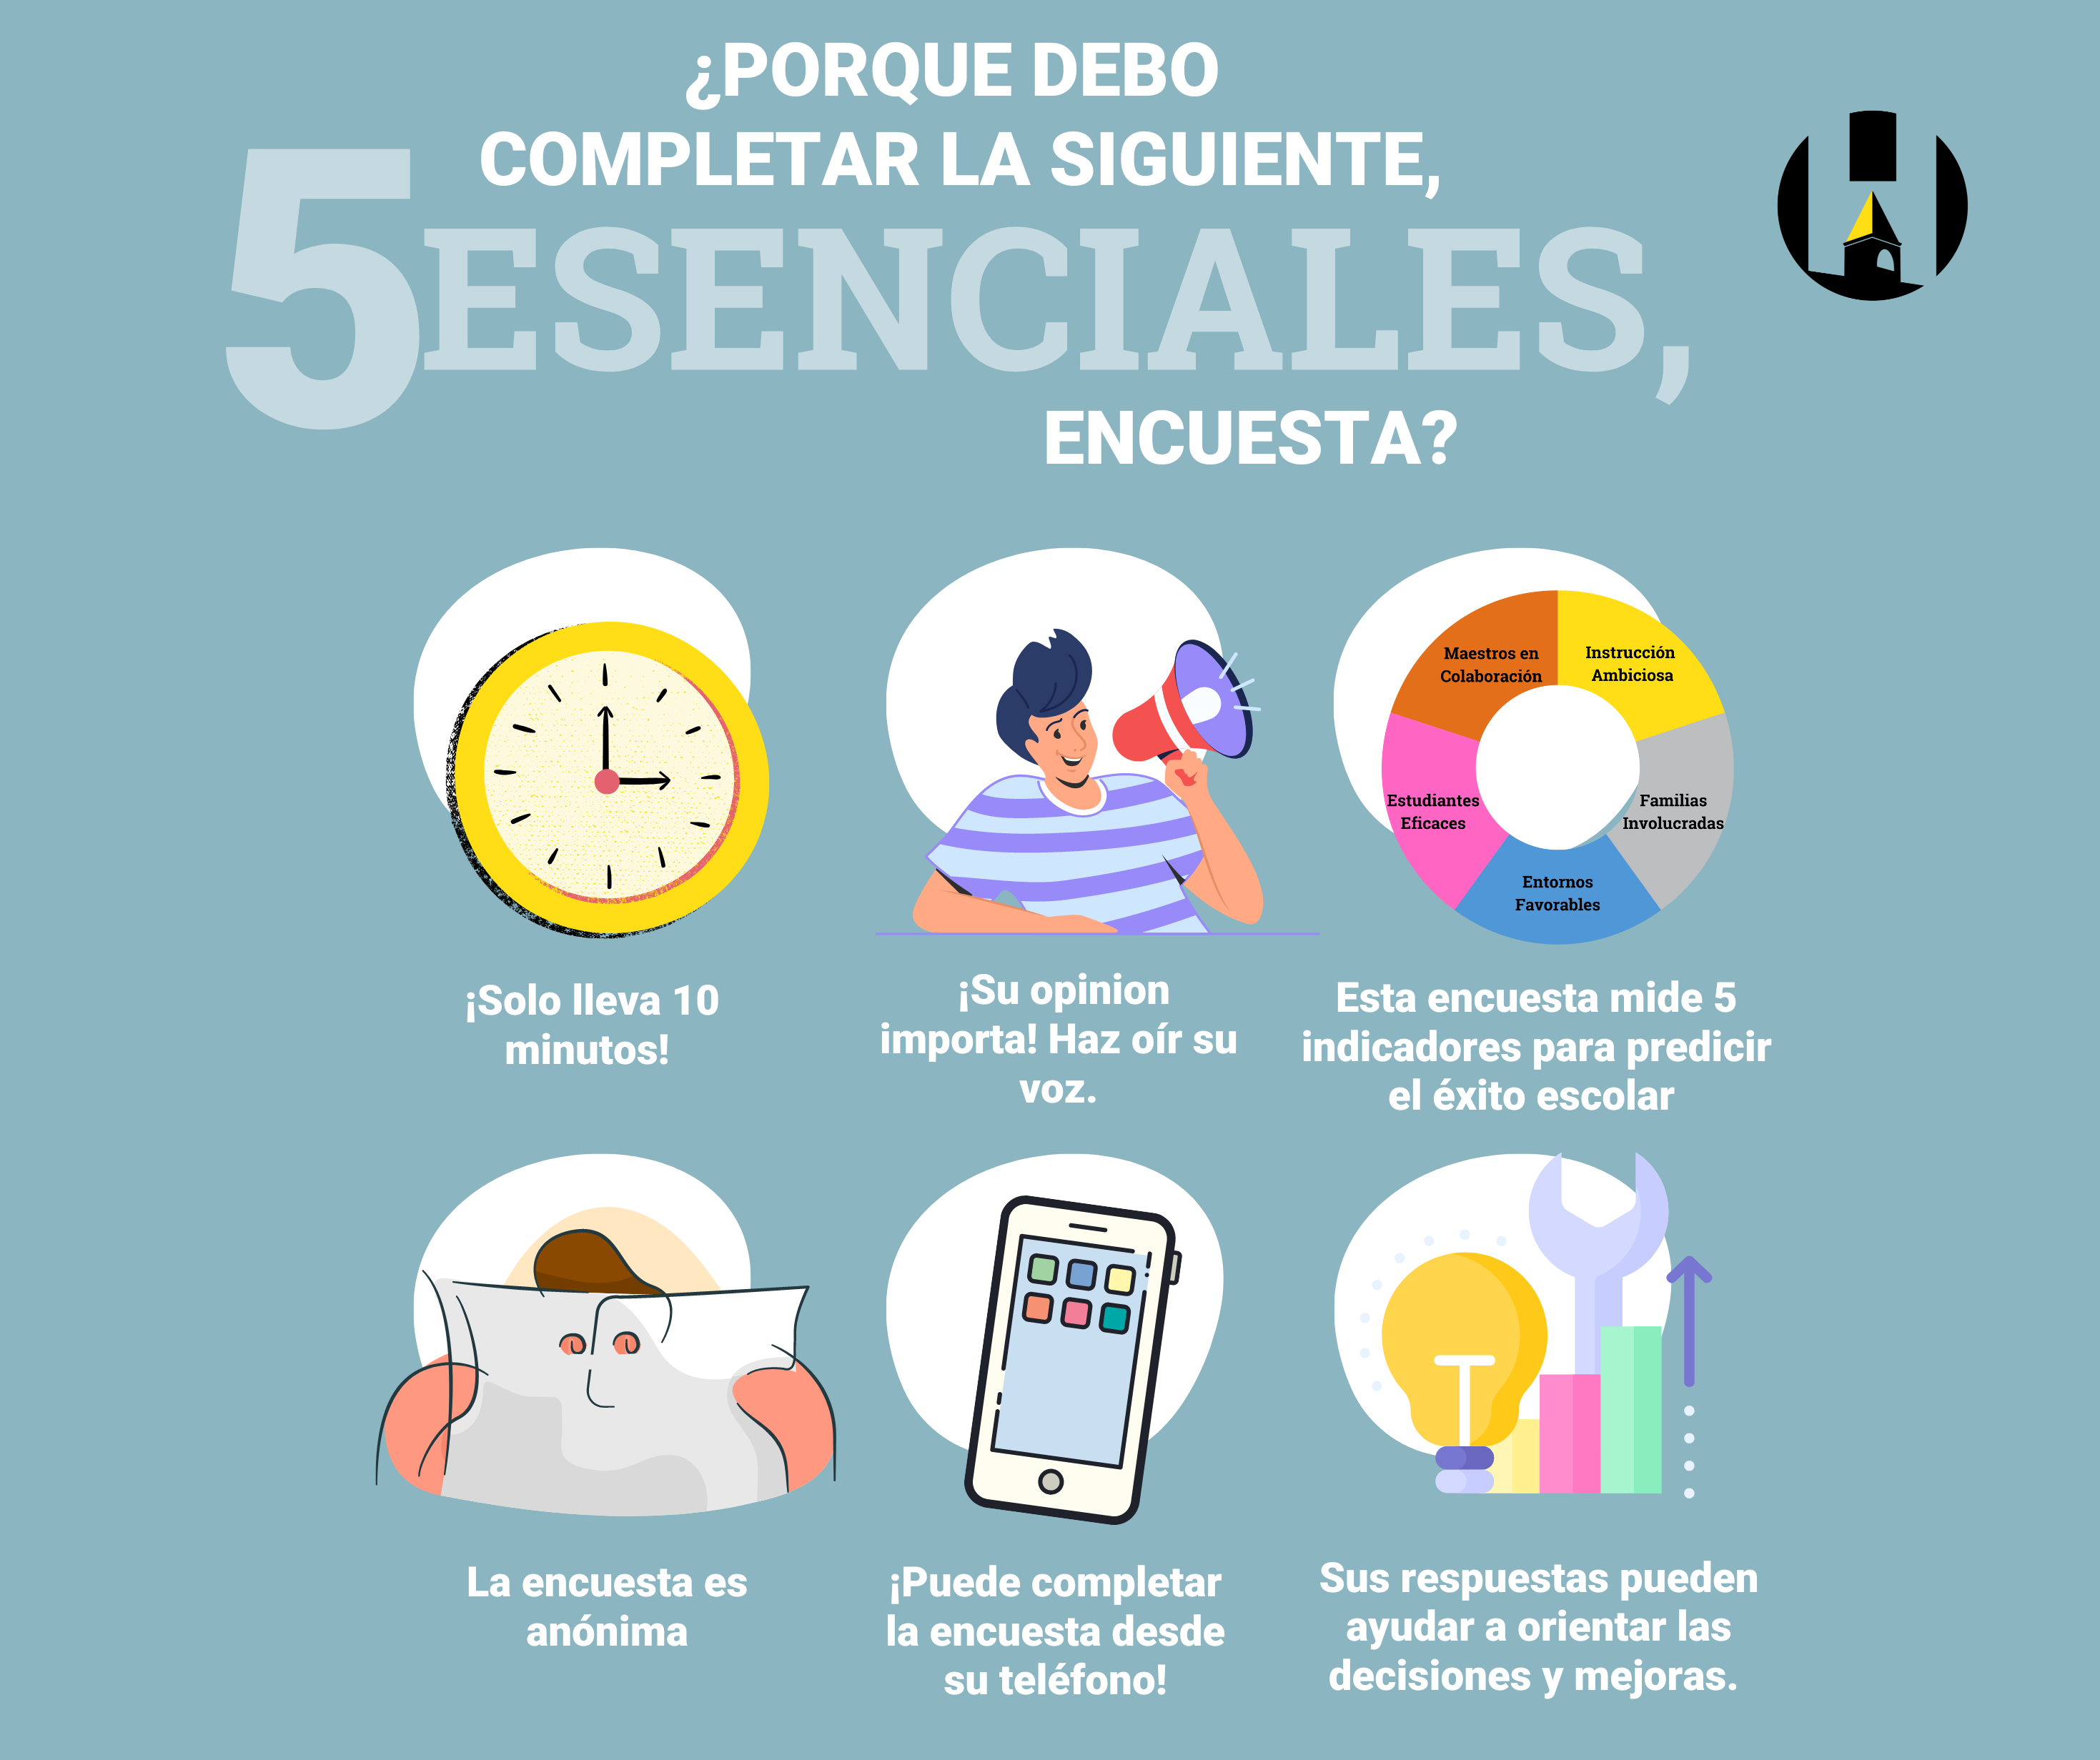 5 Essentials infographic spanish